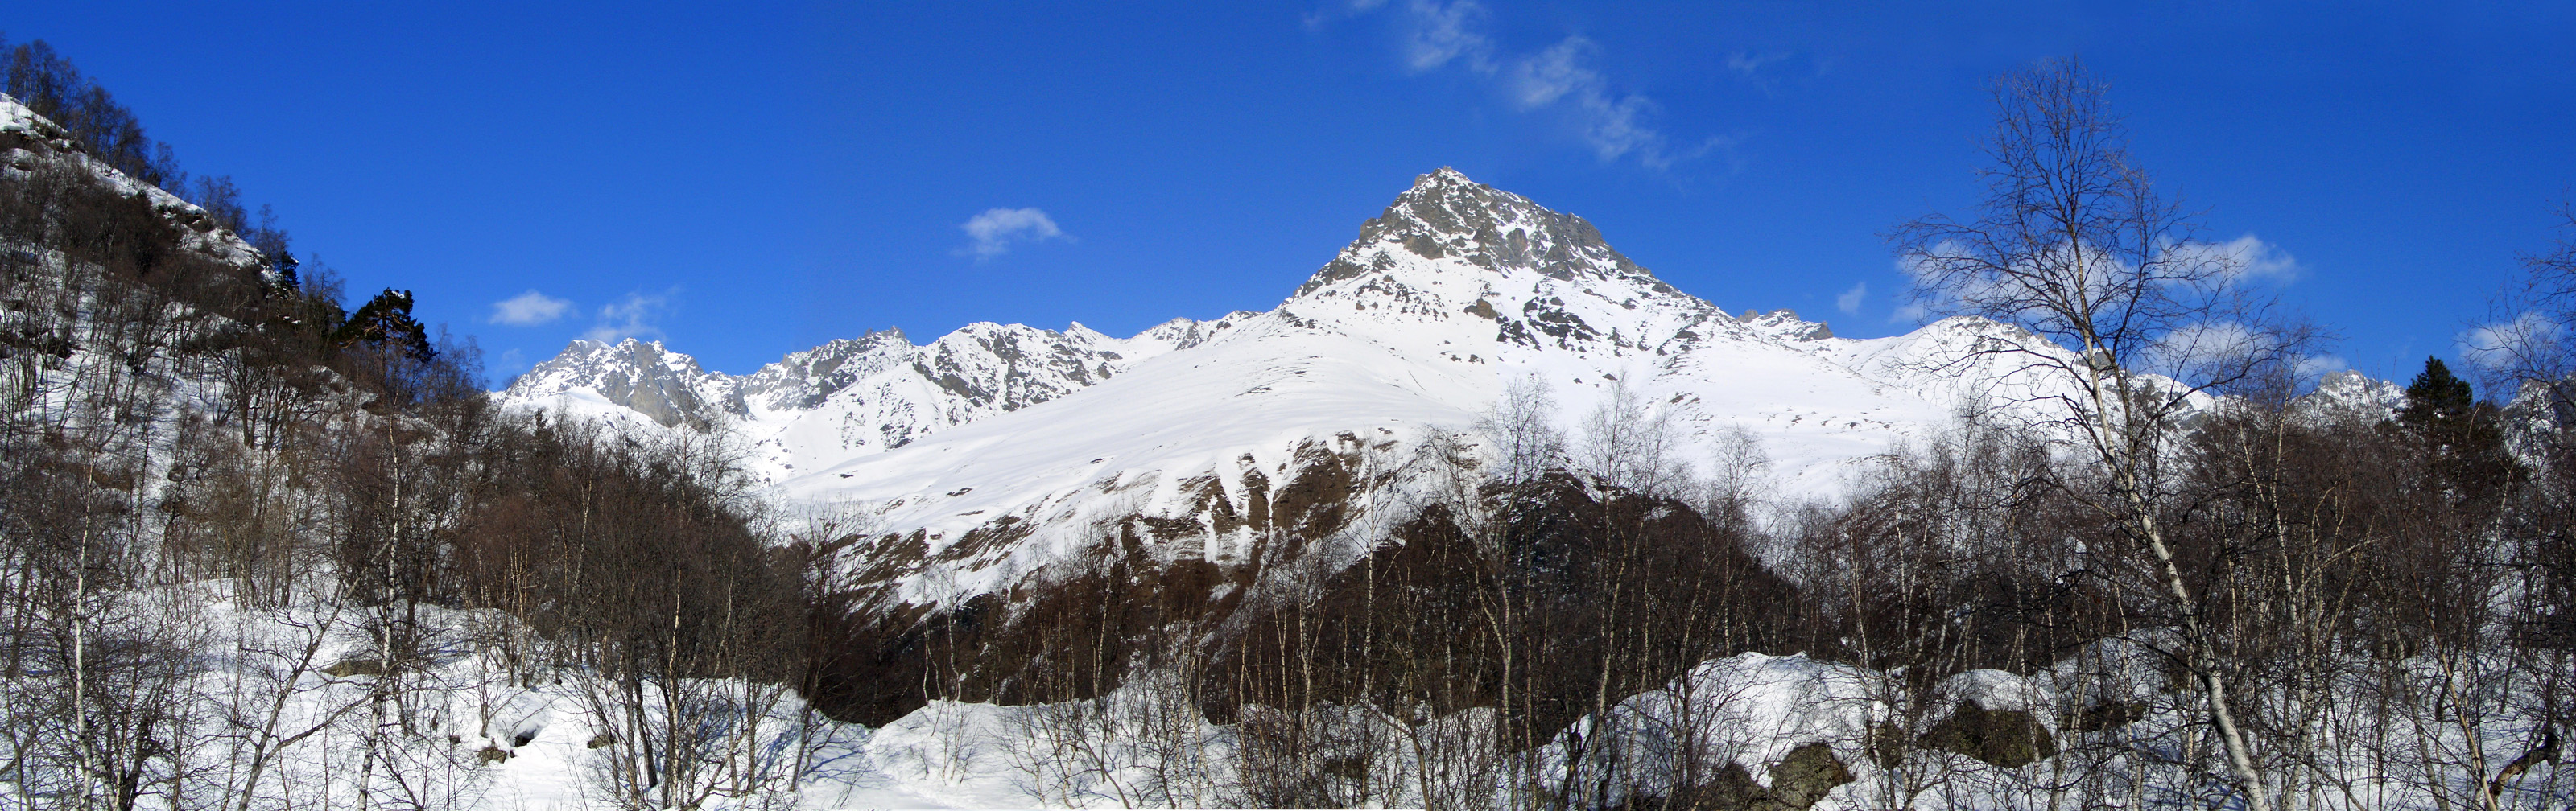 Панорама гор в Дигорском ущелье.